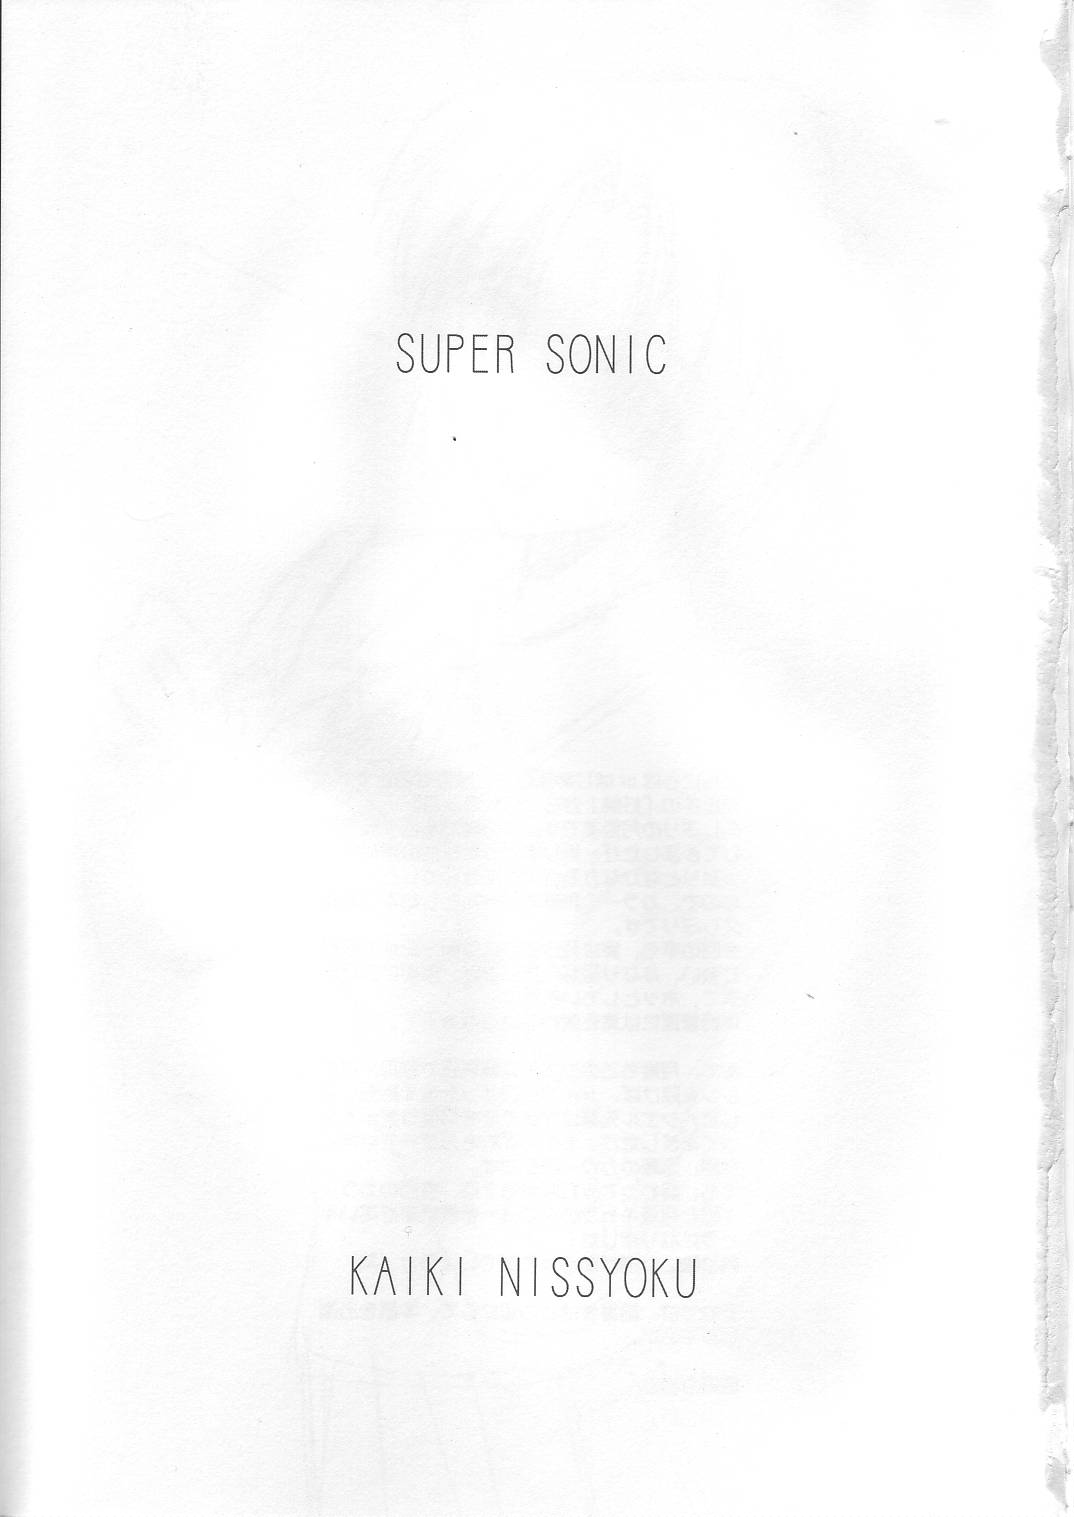 [Kaikinissyoku] SUPER SONIC (Tsukihime) 